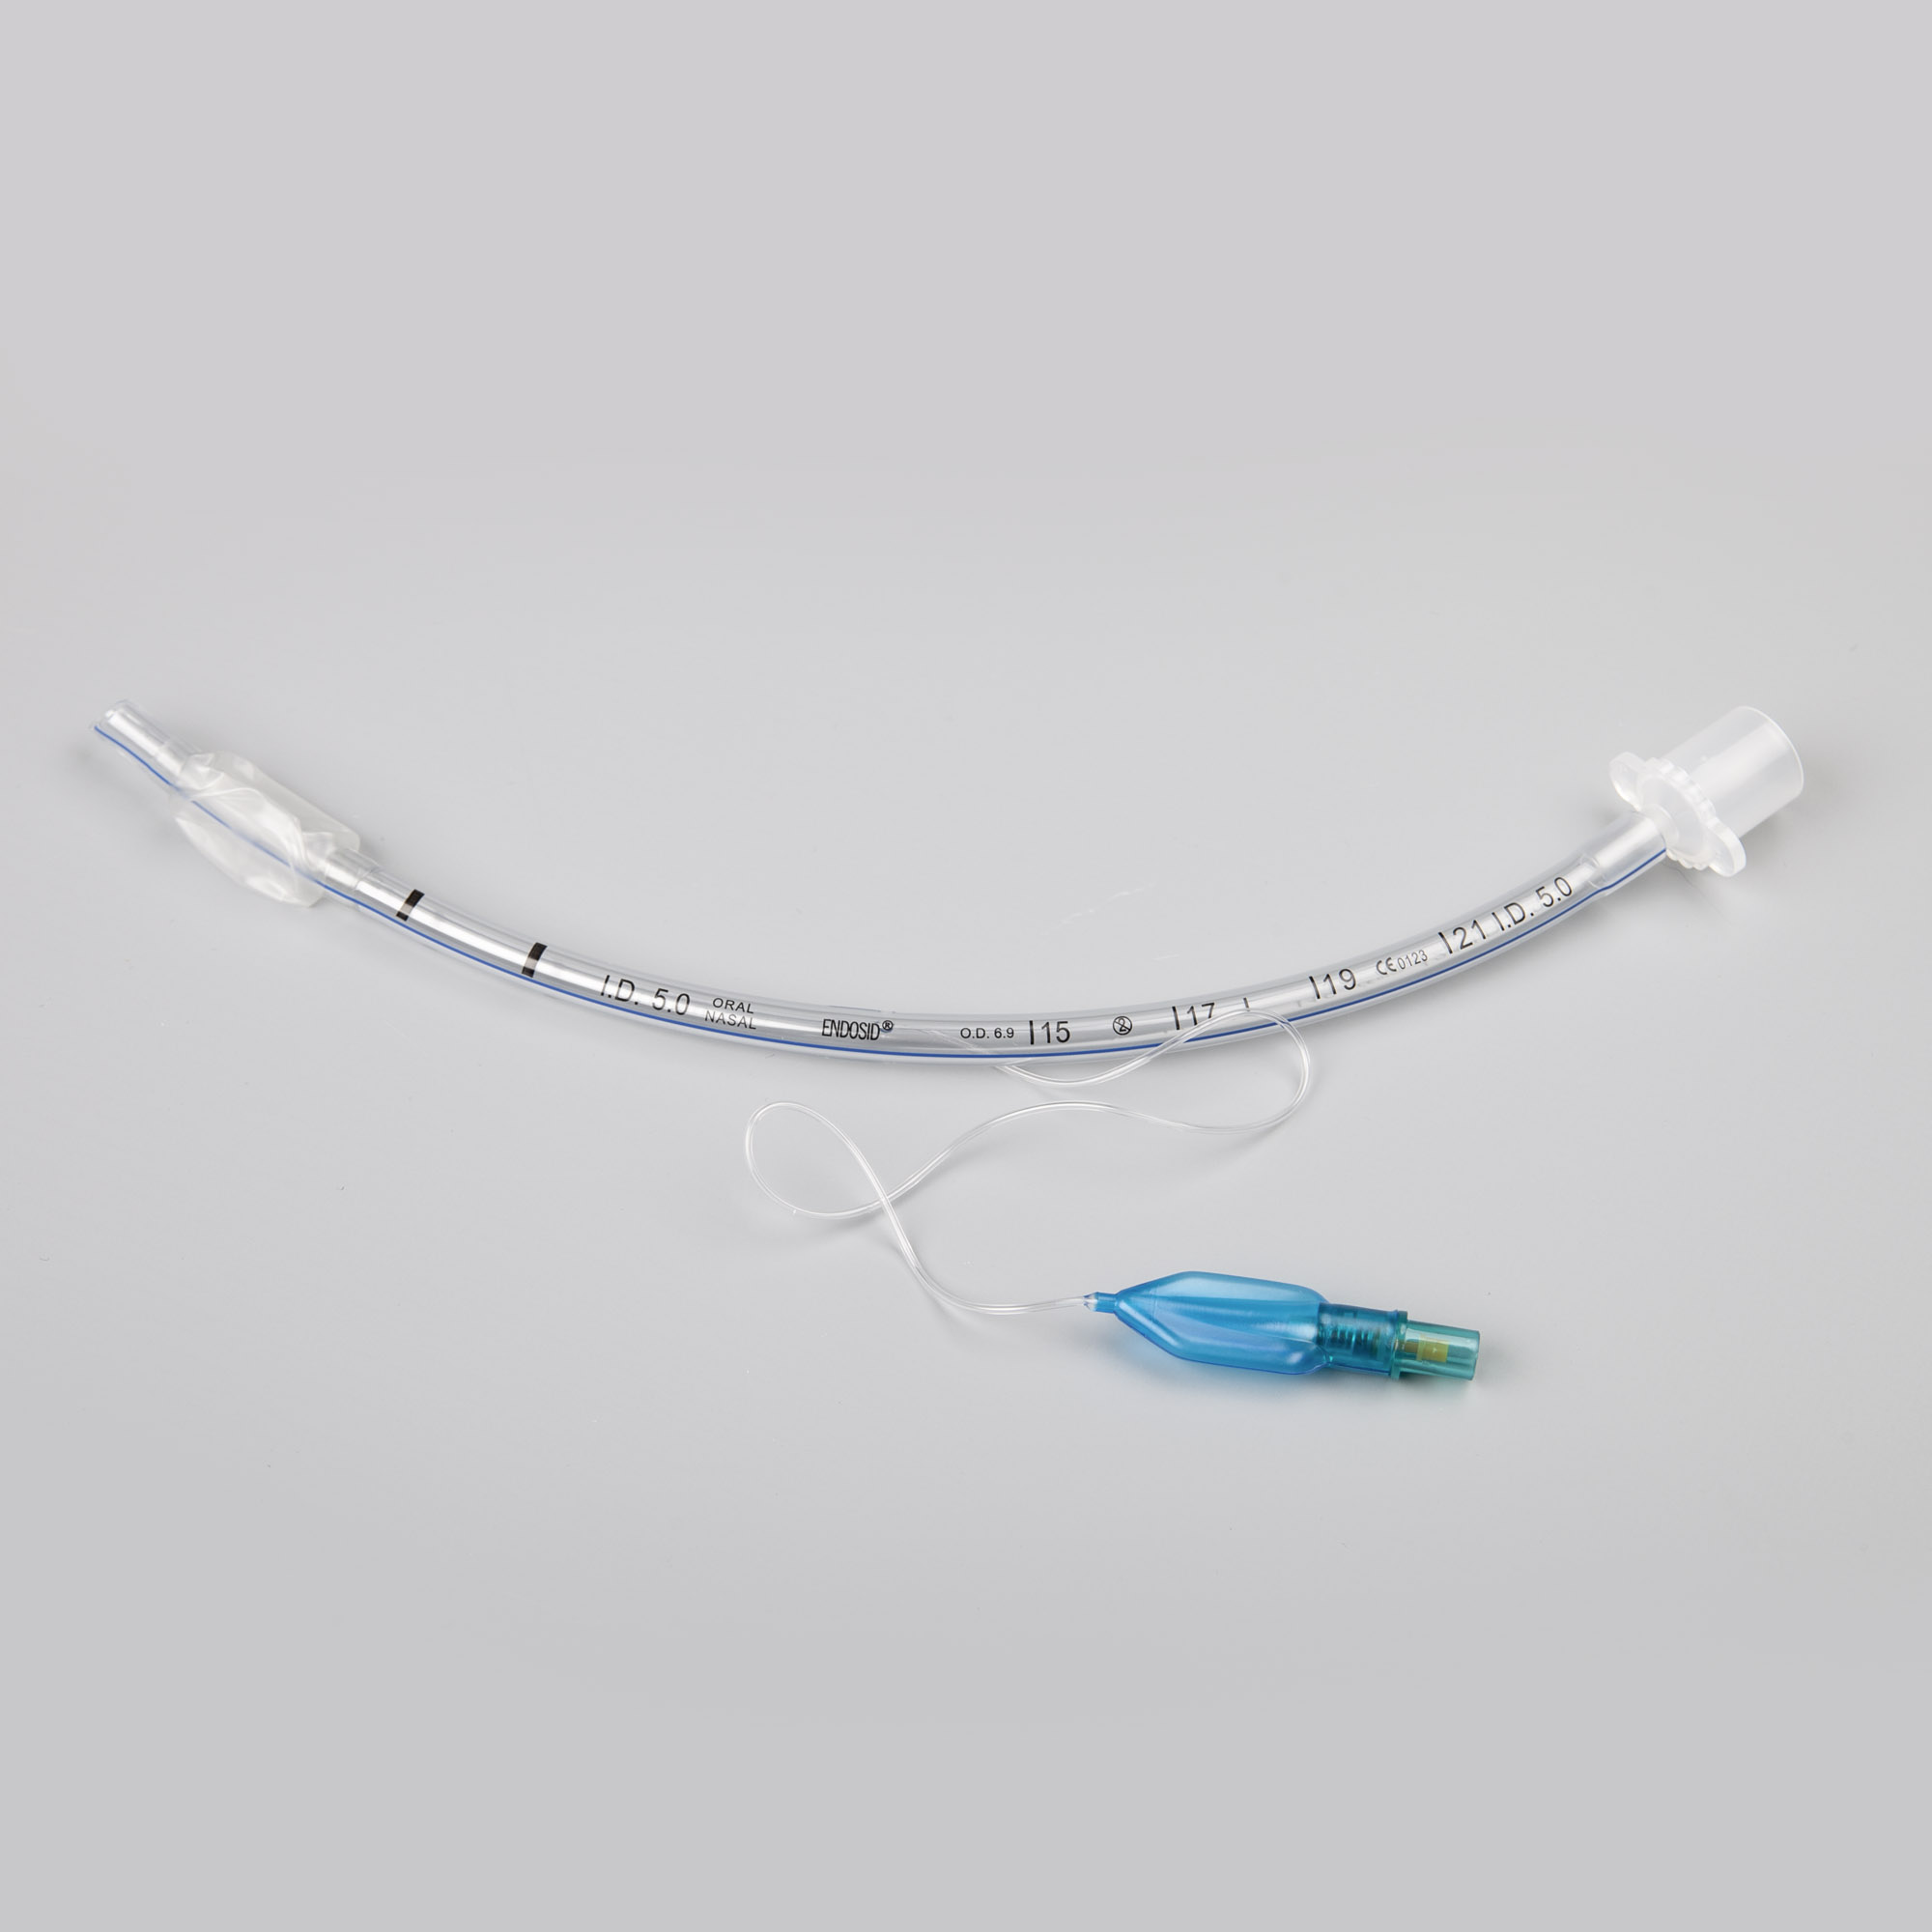 Endosid®-Tubus nasal/oral mit Cuff, Murphy-Auge und Mandrin I.D. 6,5 mm (CH 26)